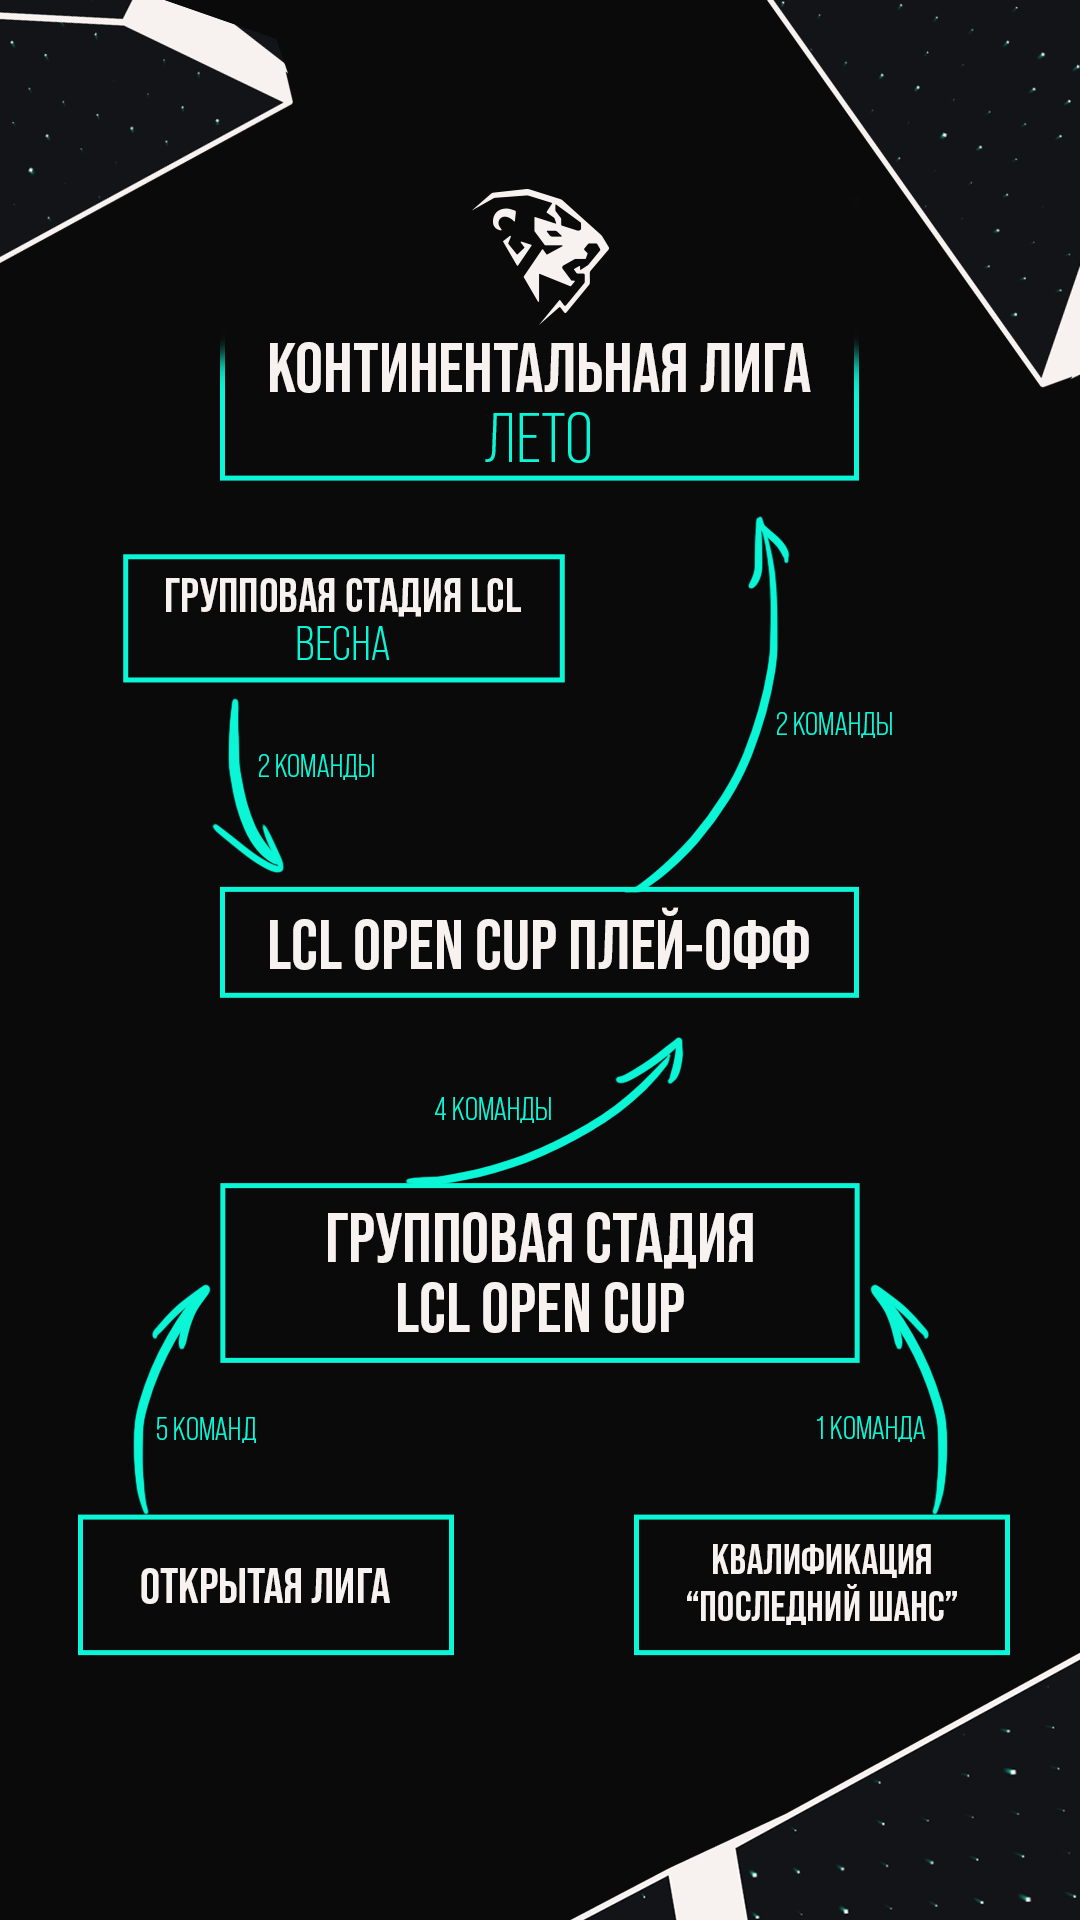 Обновленная структура турниров по LoL в СНГ